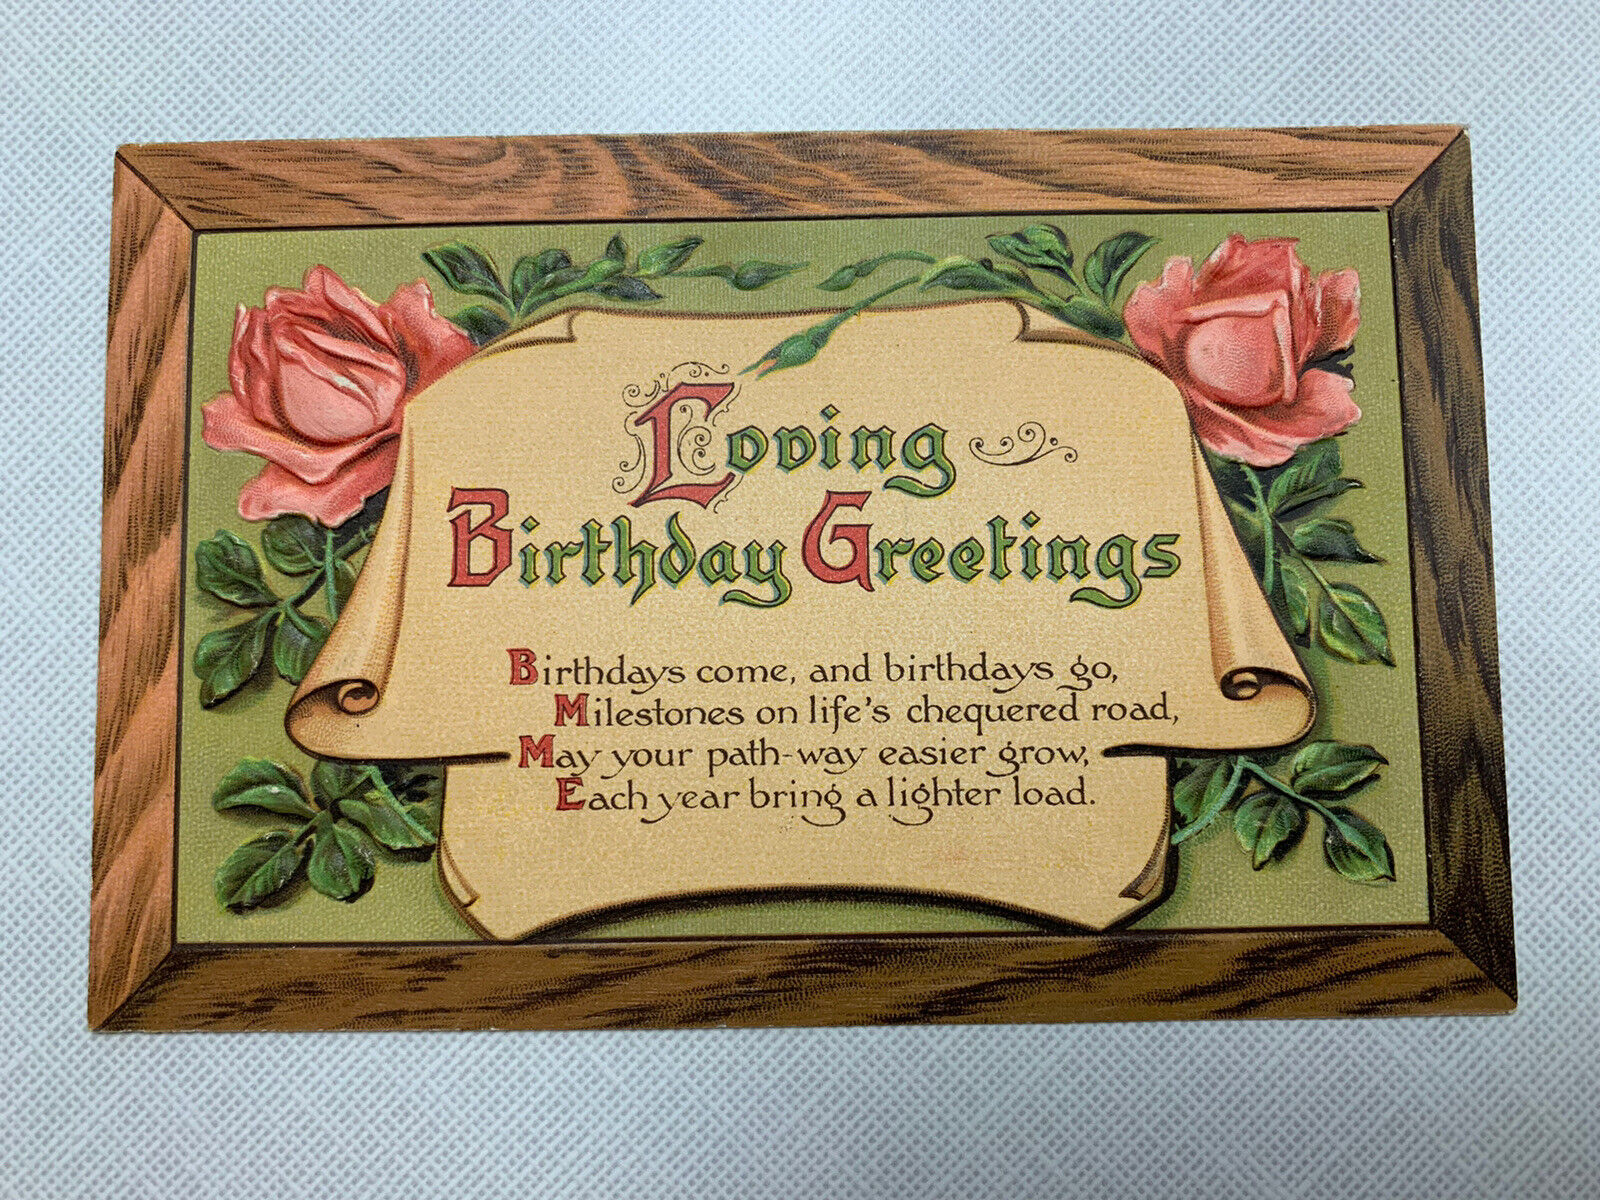 Birthday Greetings with Roses Vintage Embossed Postcard